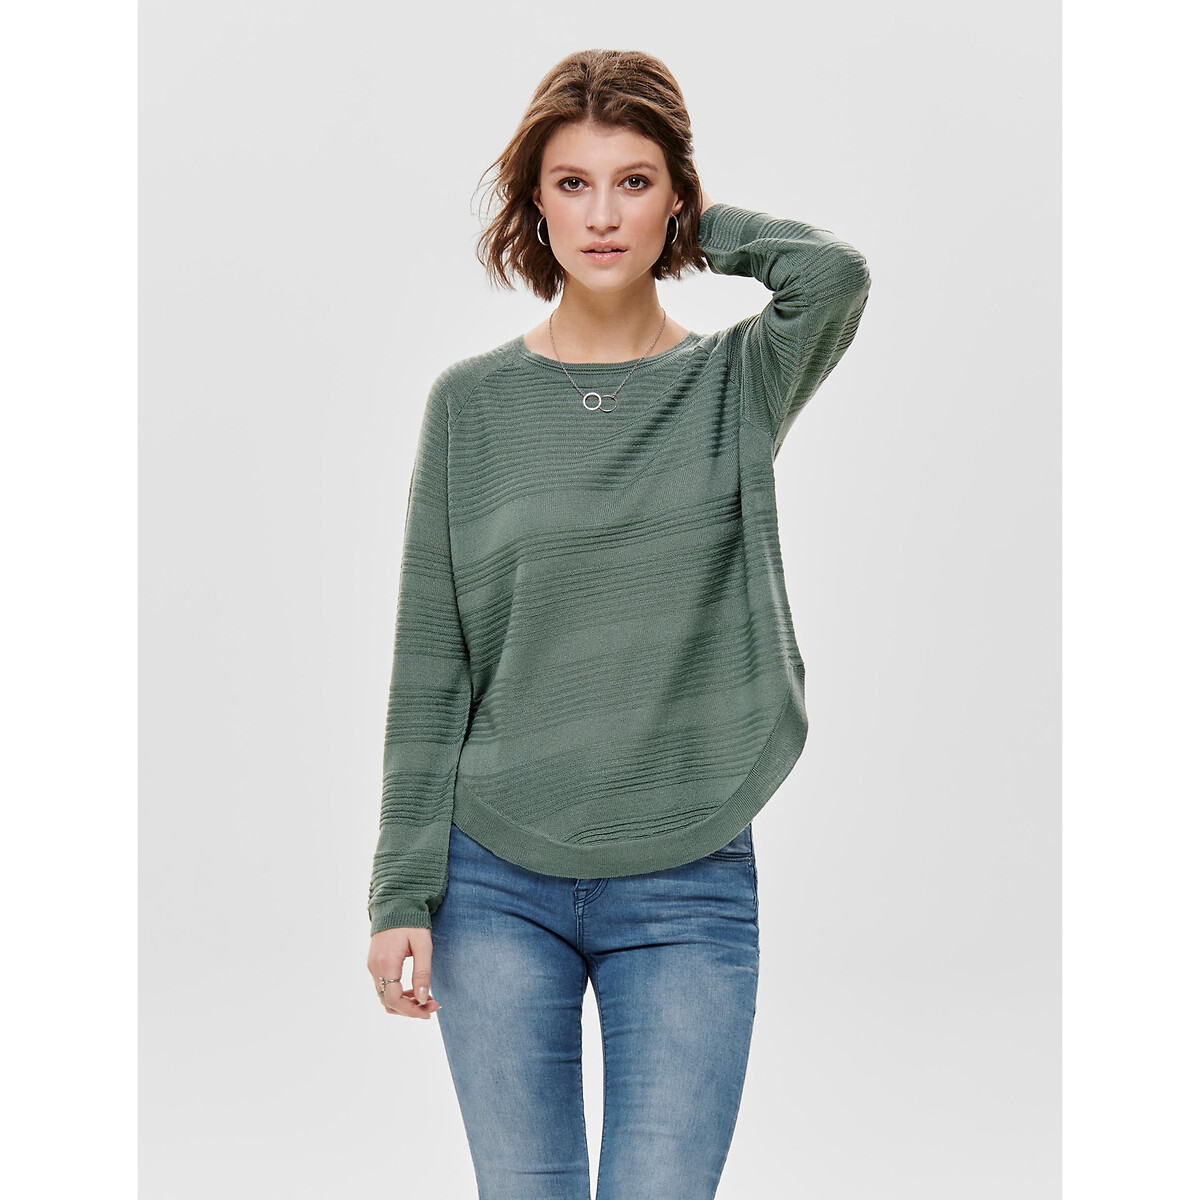 Пуловер Из тонкого трикотажа присборенный снизу M зеленый